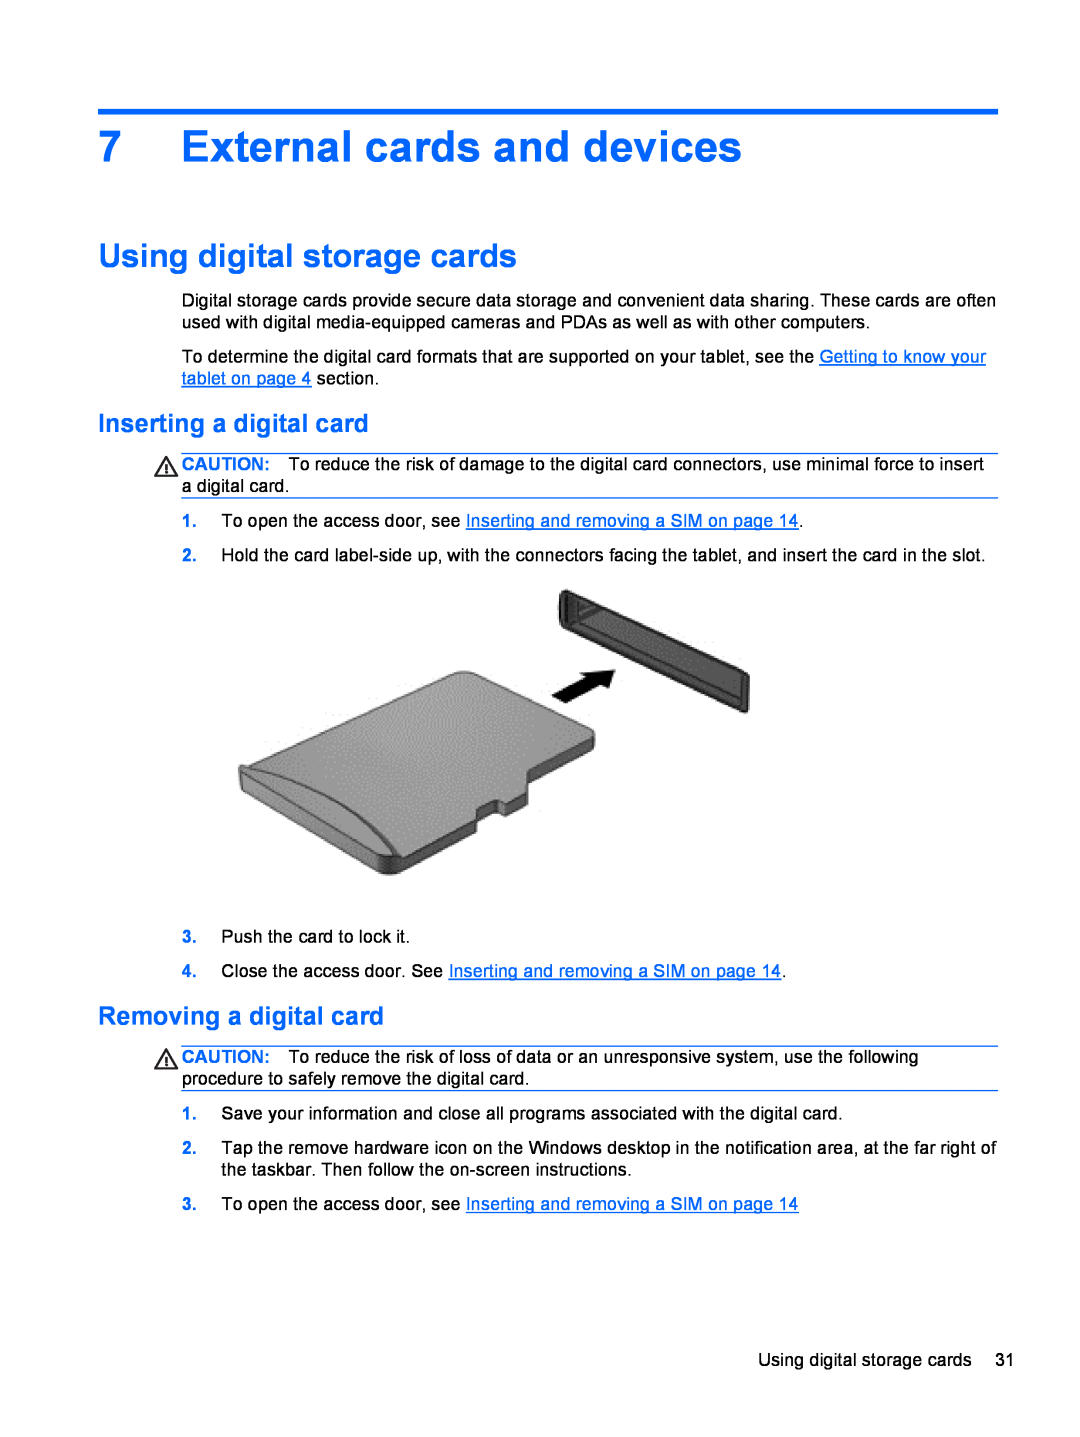 HP 900 G1 D4T09AW#ABA, 900 G1 D3H87UT External cards and devices, Using digital storage cards, Inserting a digital card 